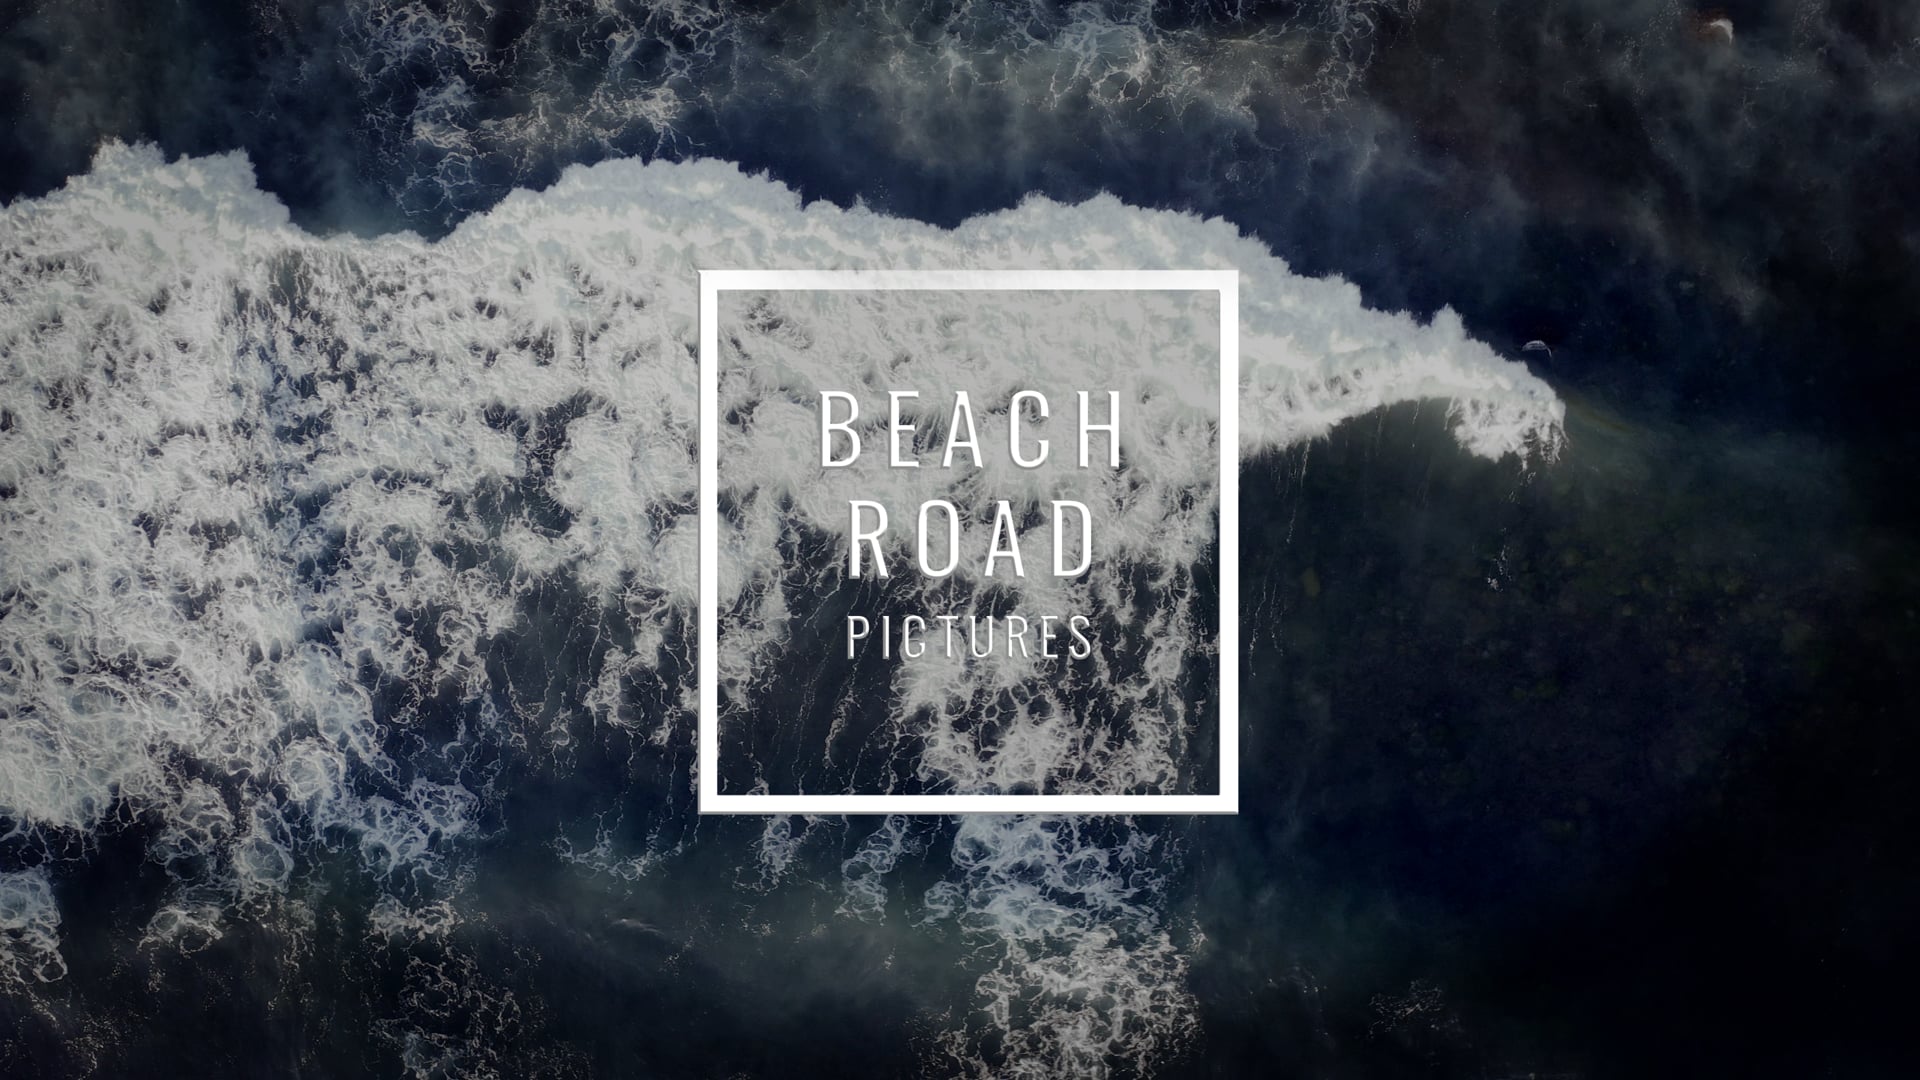 (c) Beachroad.com.au